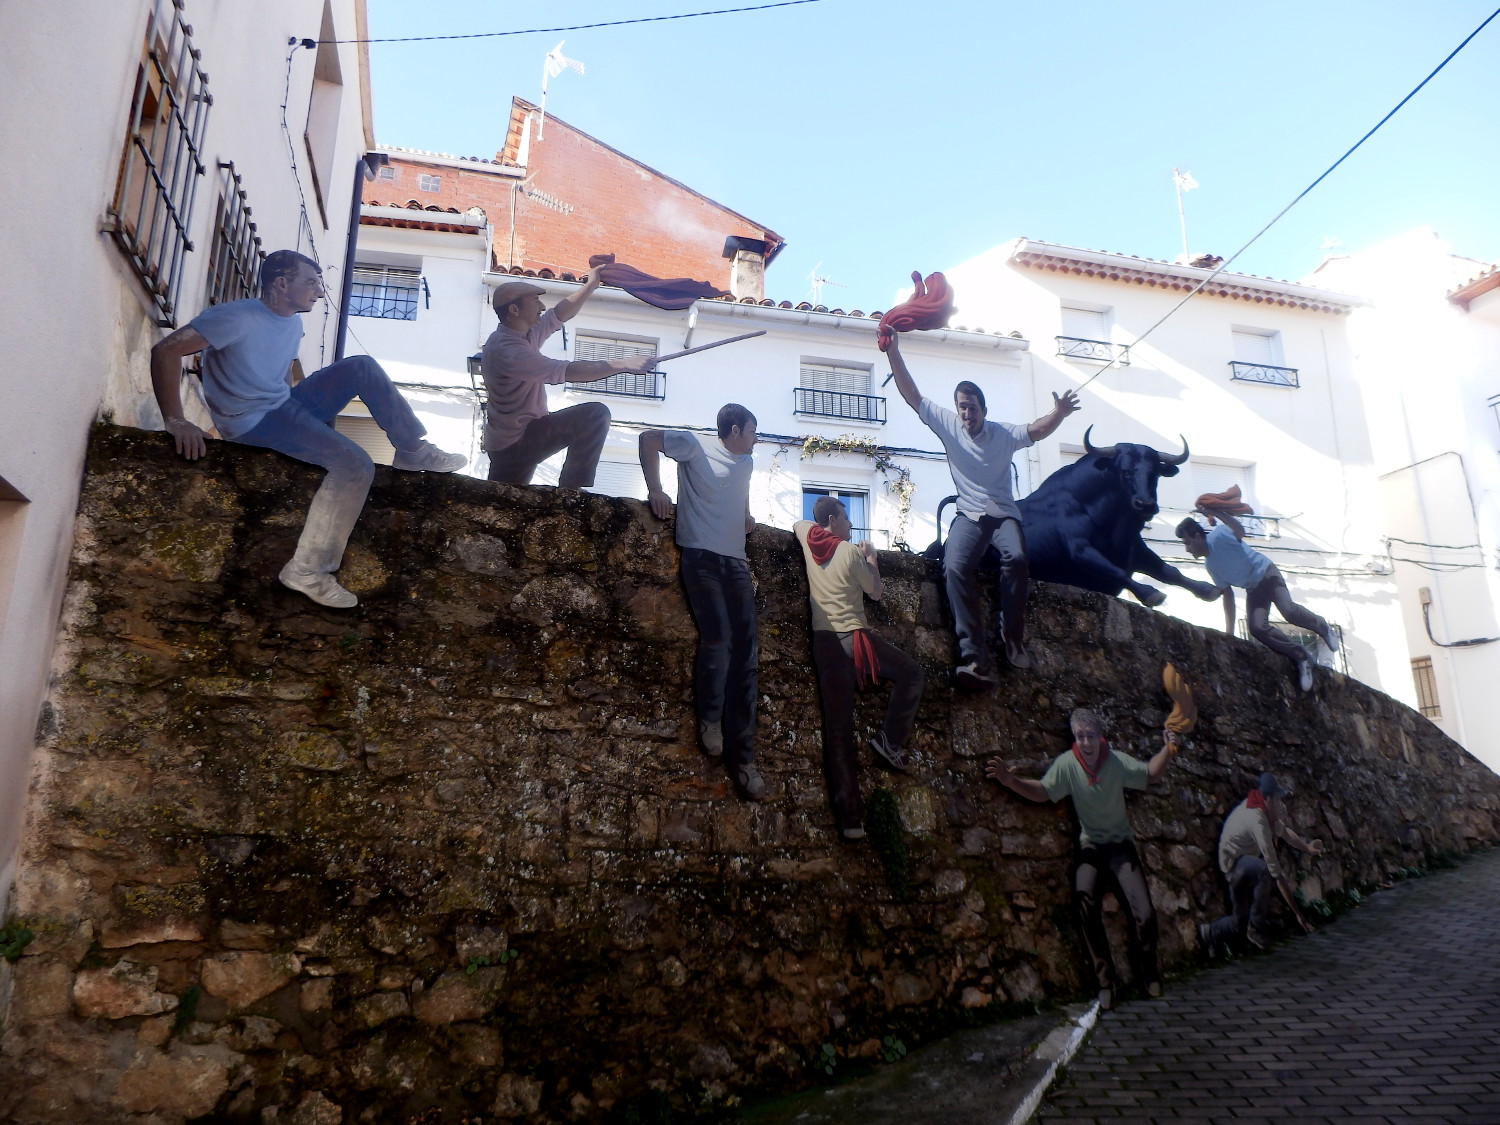 Mozos durante una corrida de toros en Cañete (Cuenca)